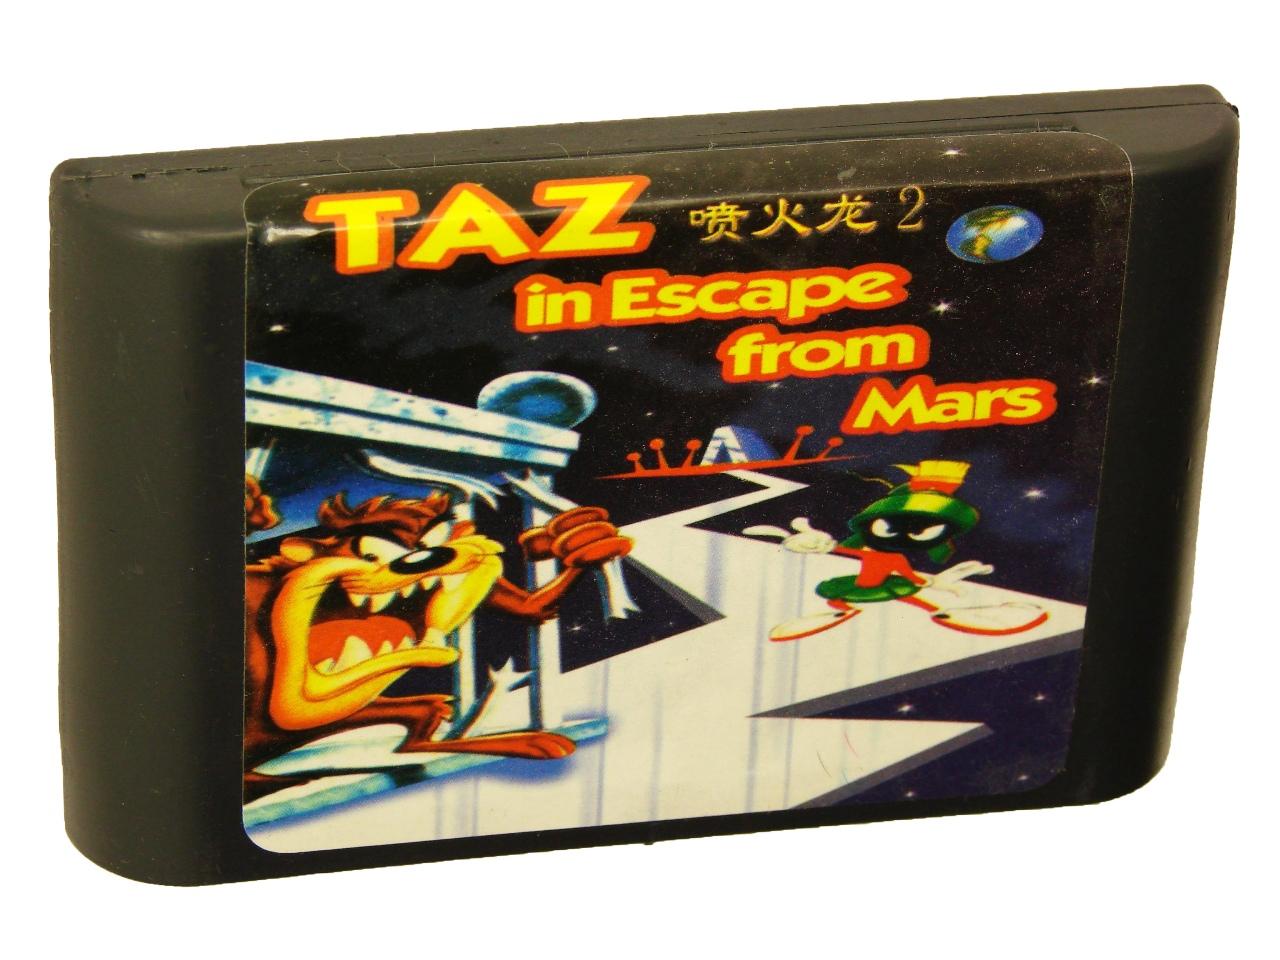   Sega Taz in escape from Mars (Sega)